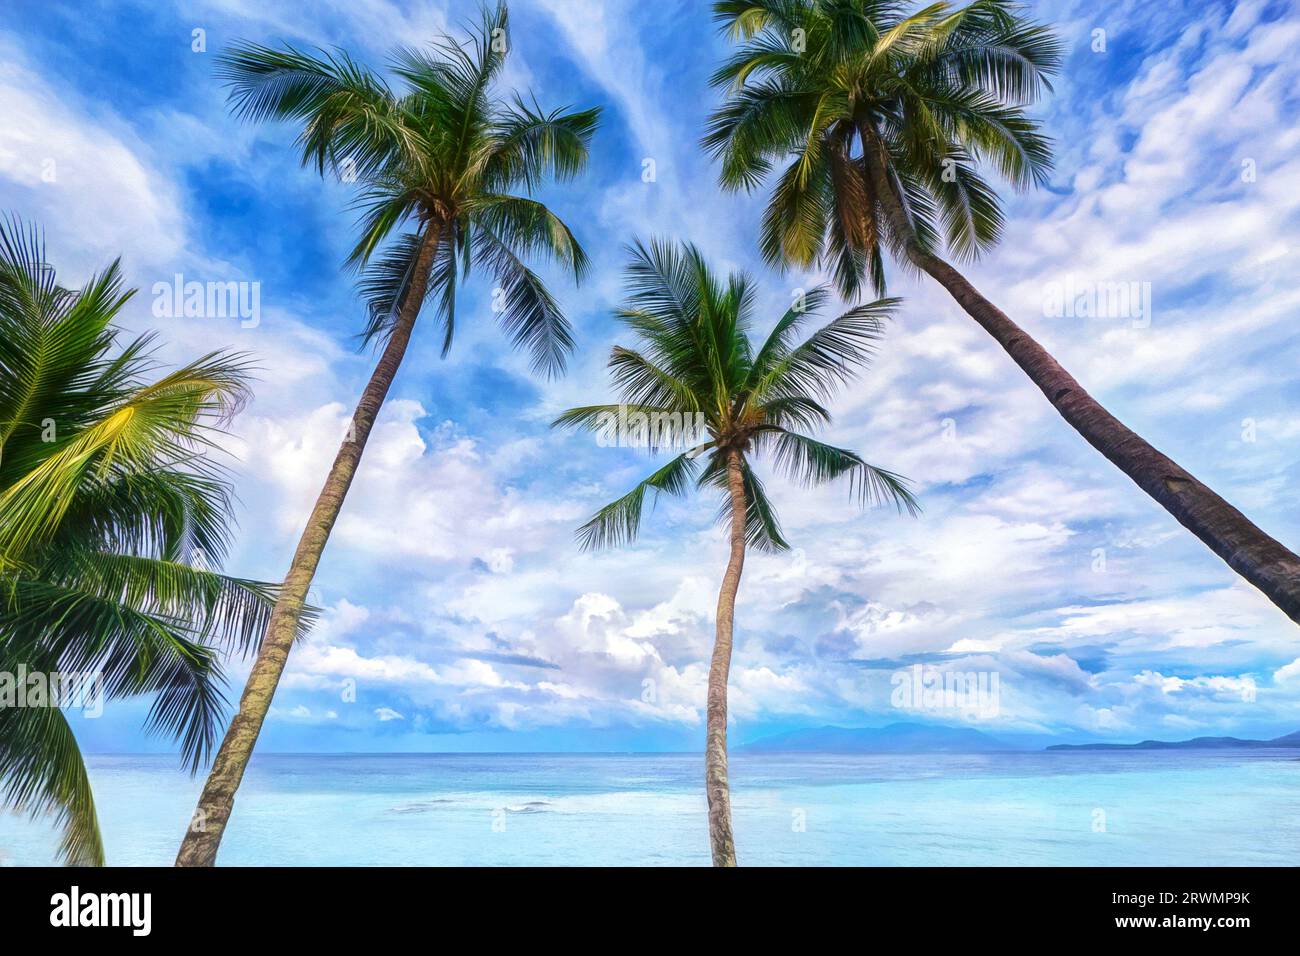 Vista ad angolo basso di palme da cocco ondeggianti con nuvole modeste e acque turchesi sullo sfondo, sull'isola di Mindoro, Filippine. Foto Stock